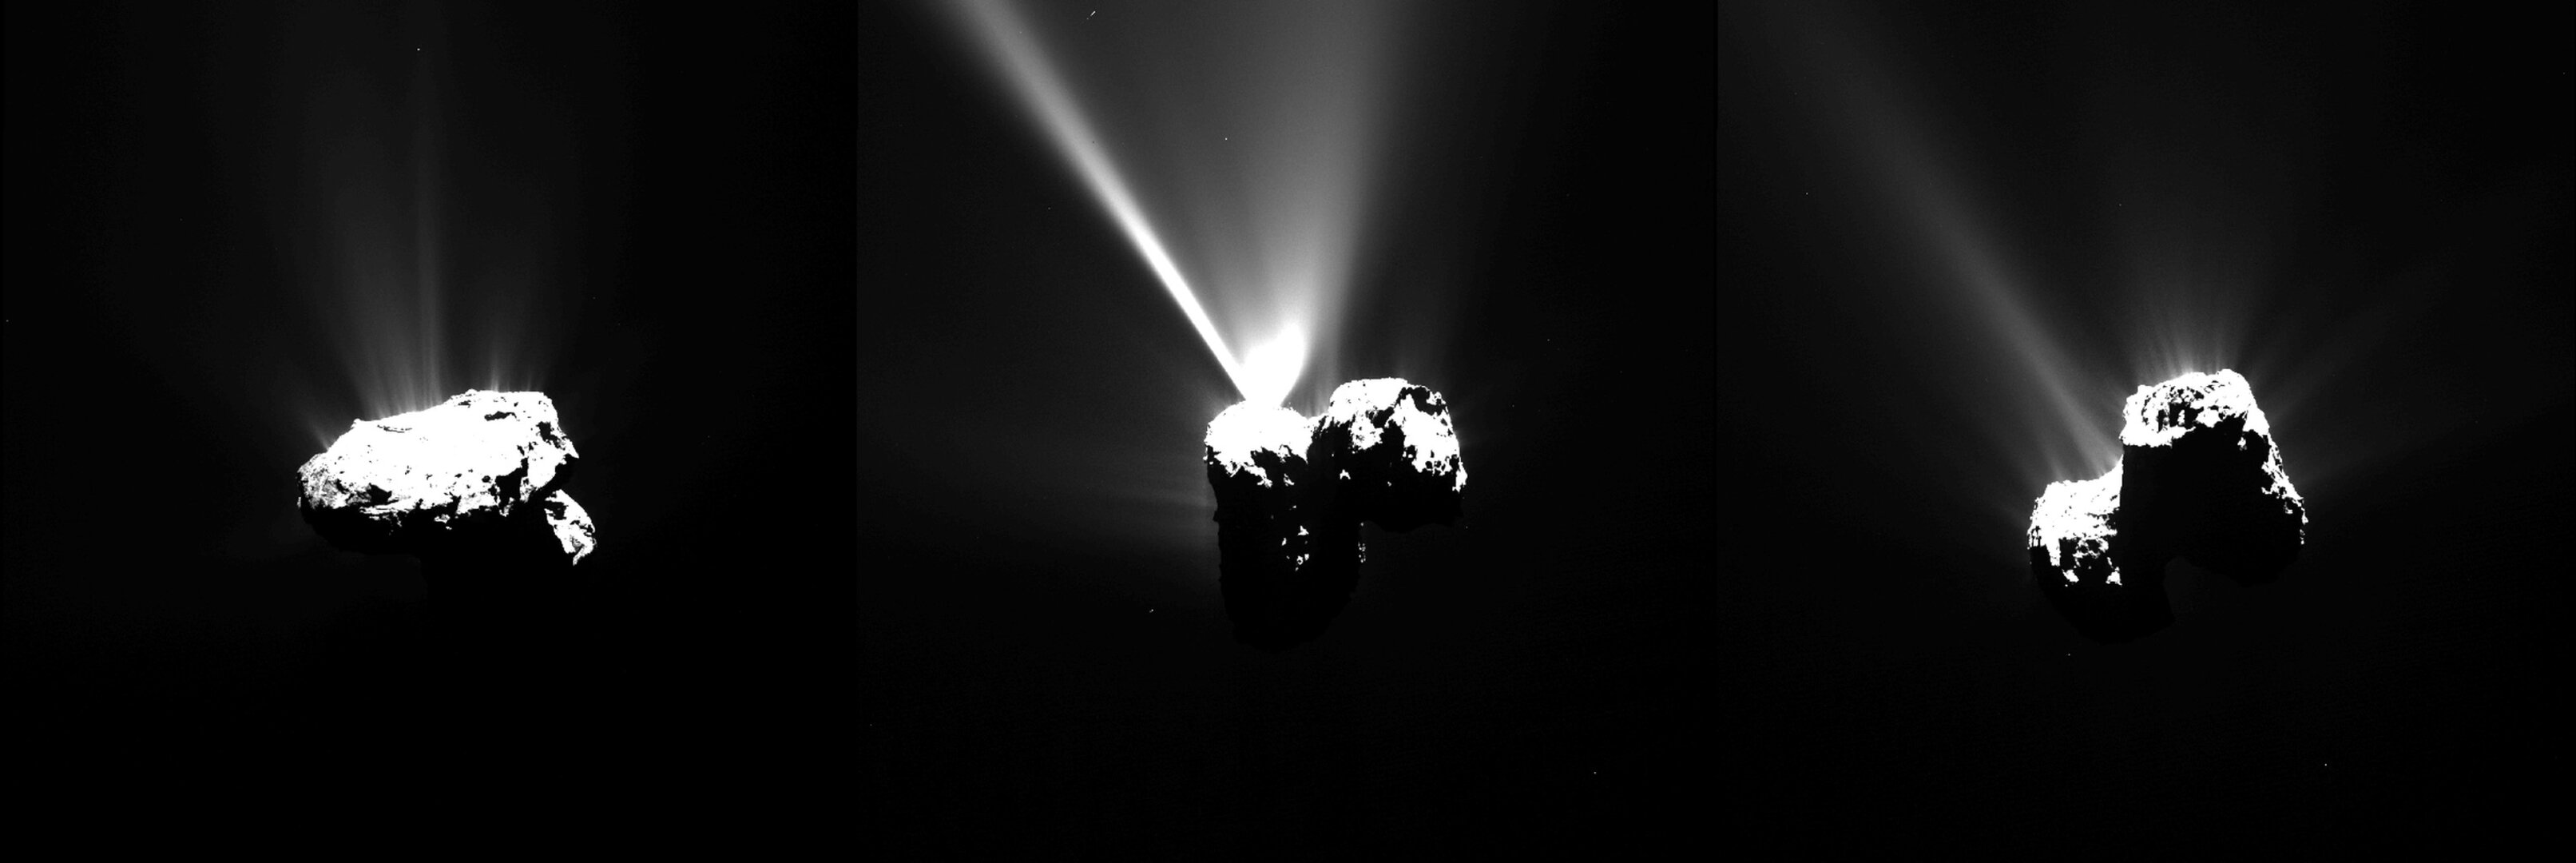 Фотографии Rosetta кометы 67P